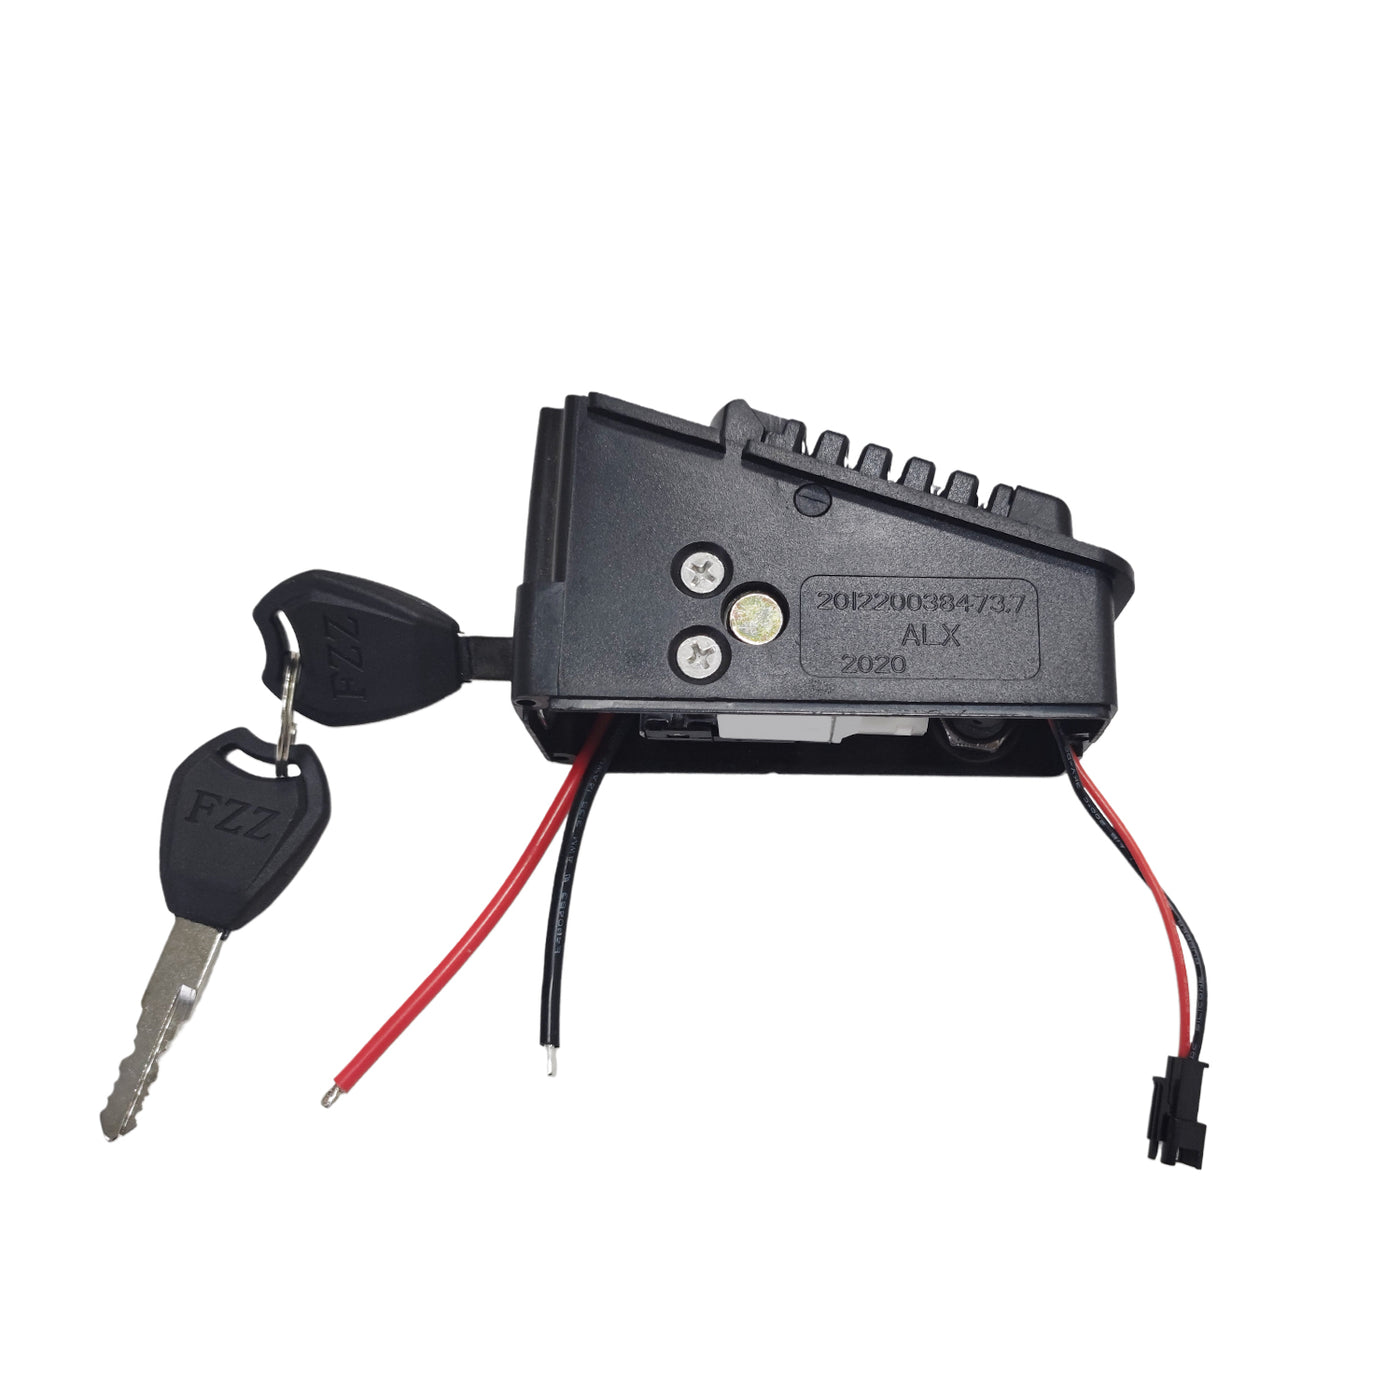 Battery Lock and keys for ROAMER